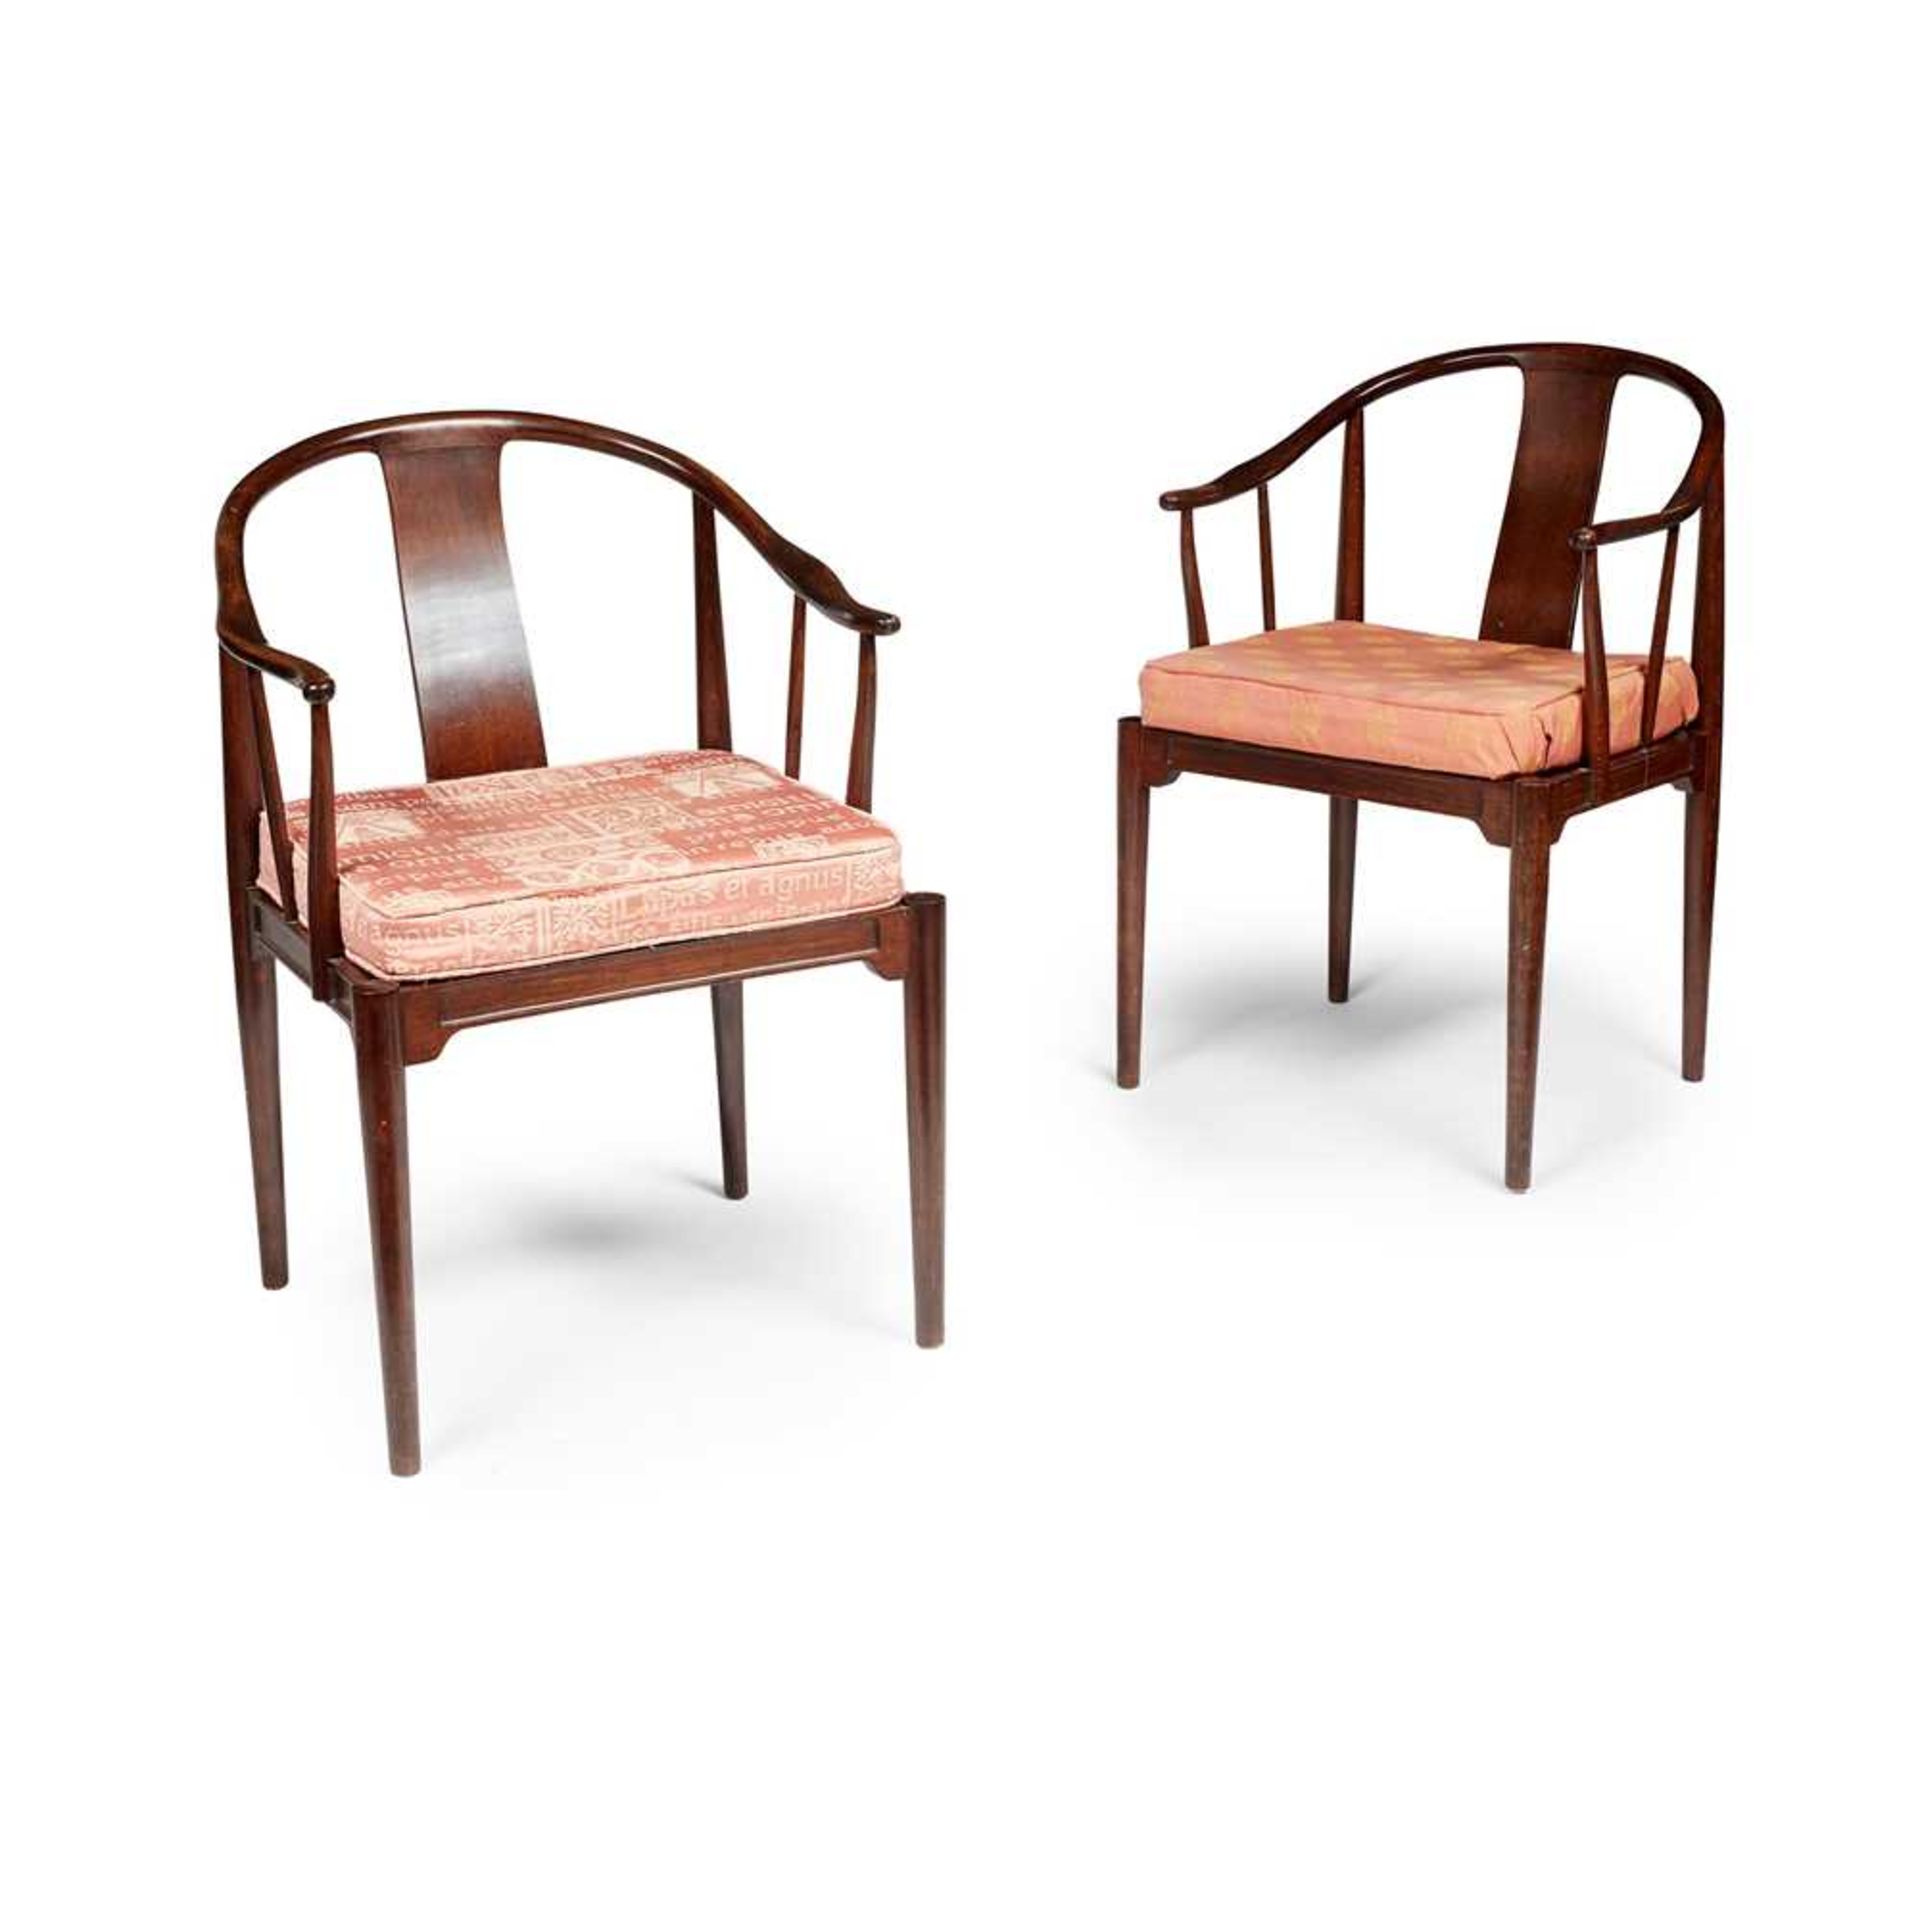 Hans Wegner (Danish 1914-2007) Pair of Chinese Chairs, designed 1944 - Image 2 of 2